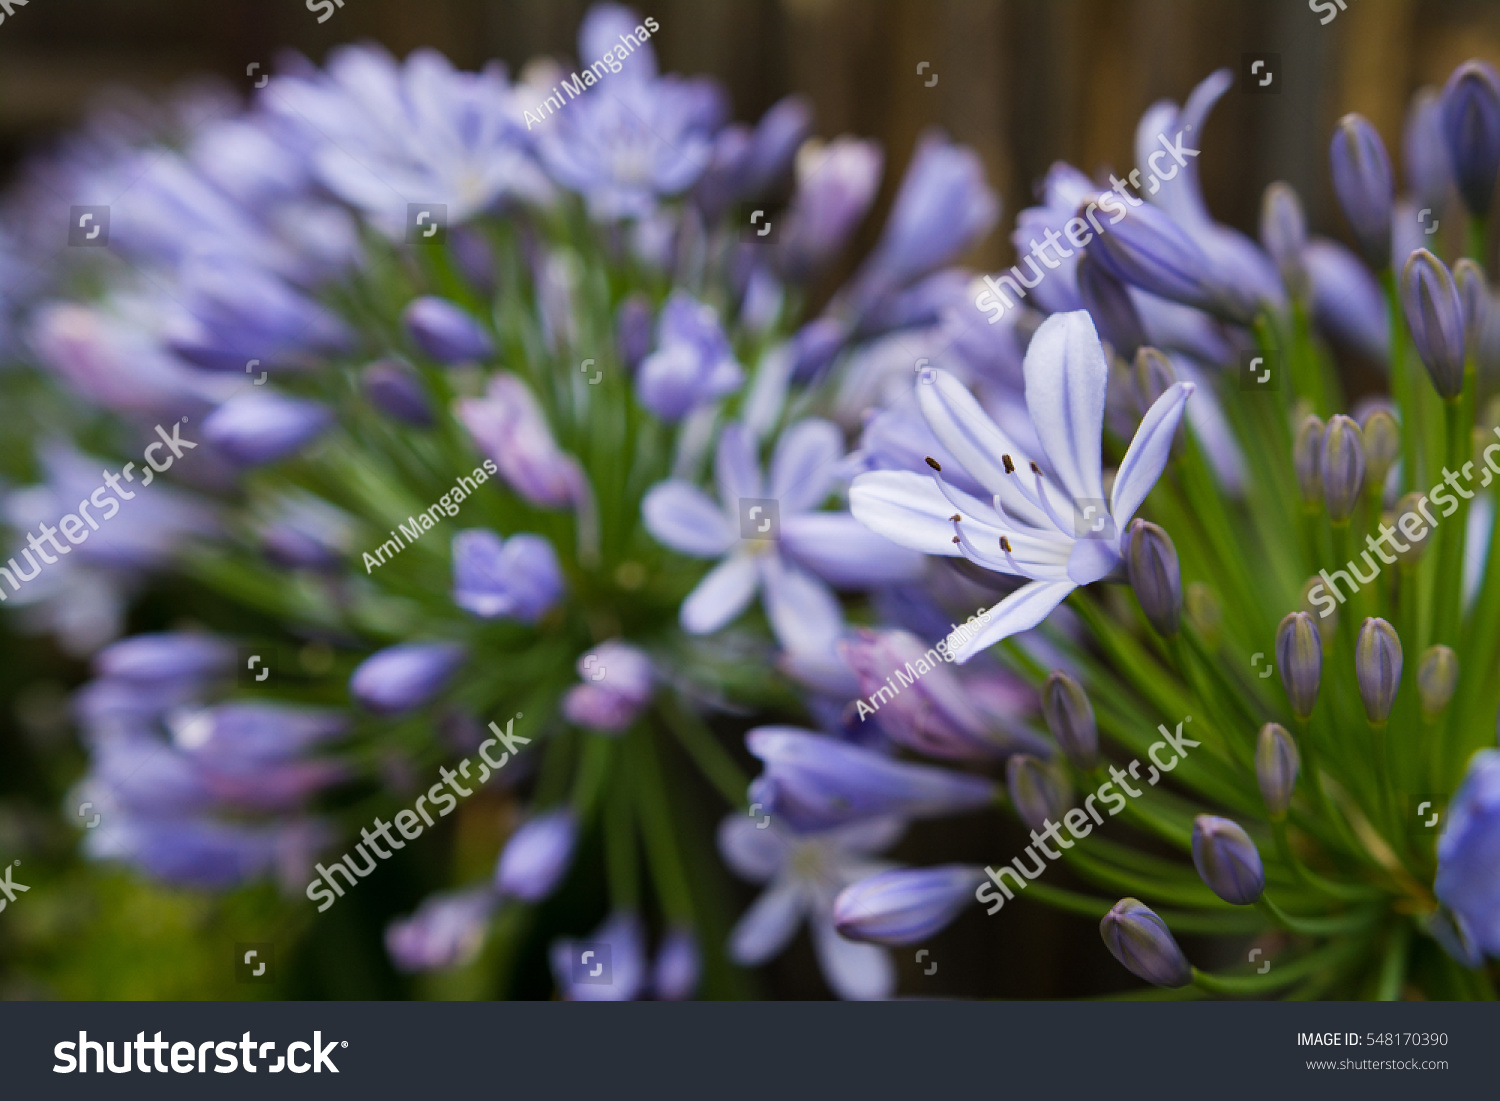 Agapanthus Single Flower Focus Stock Photo 548170390 | Shutterstock